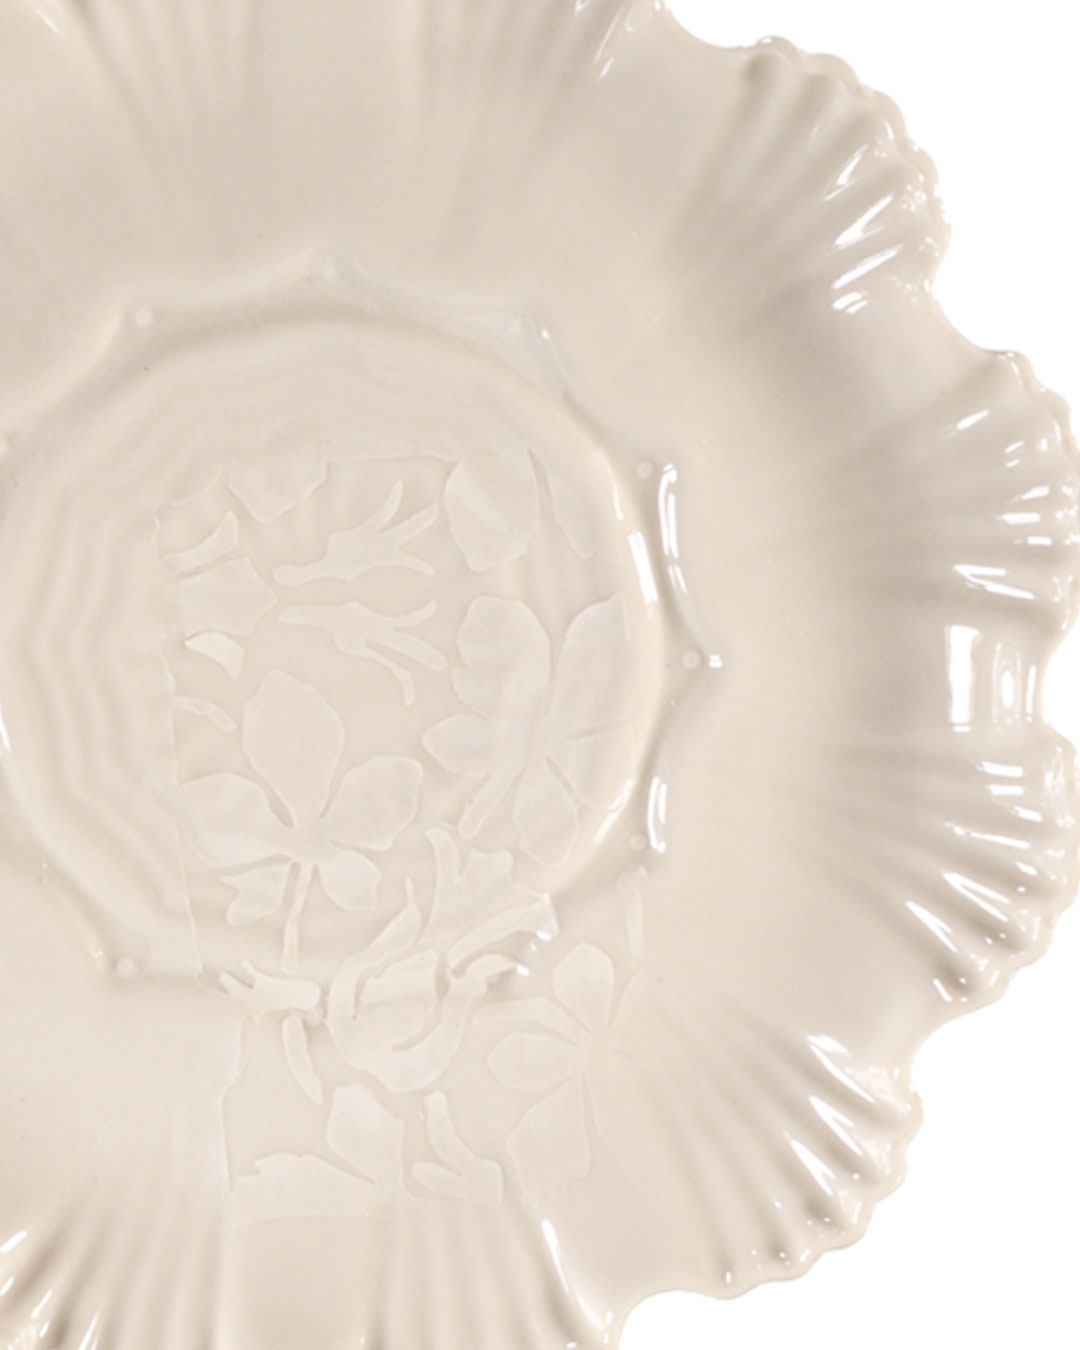 White Medium Stoneware Plate